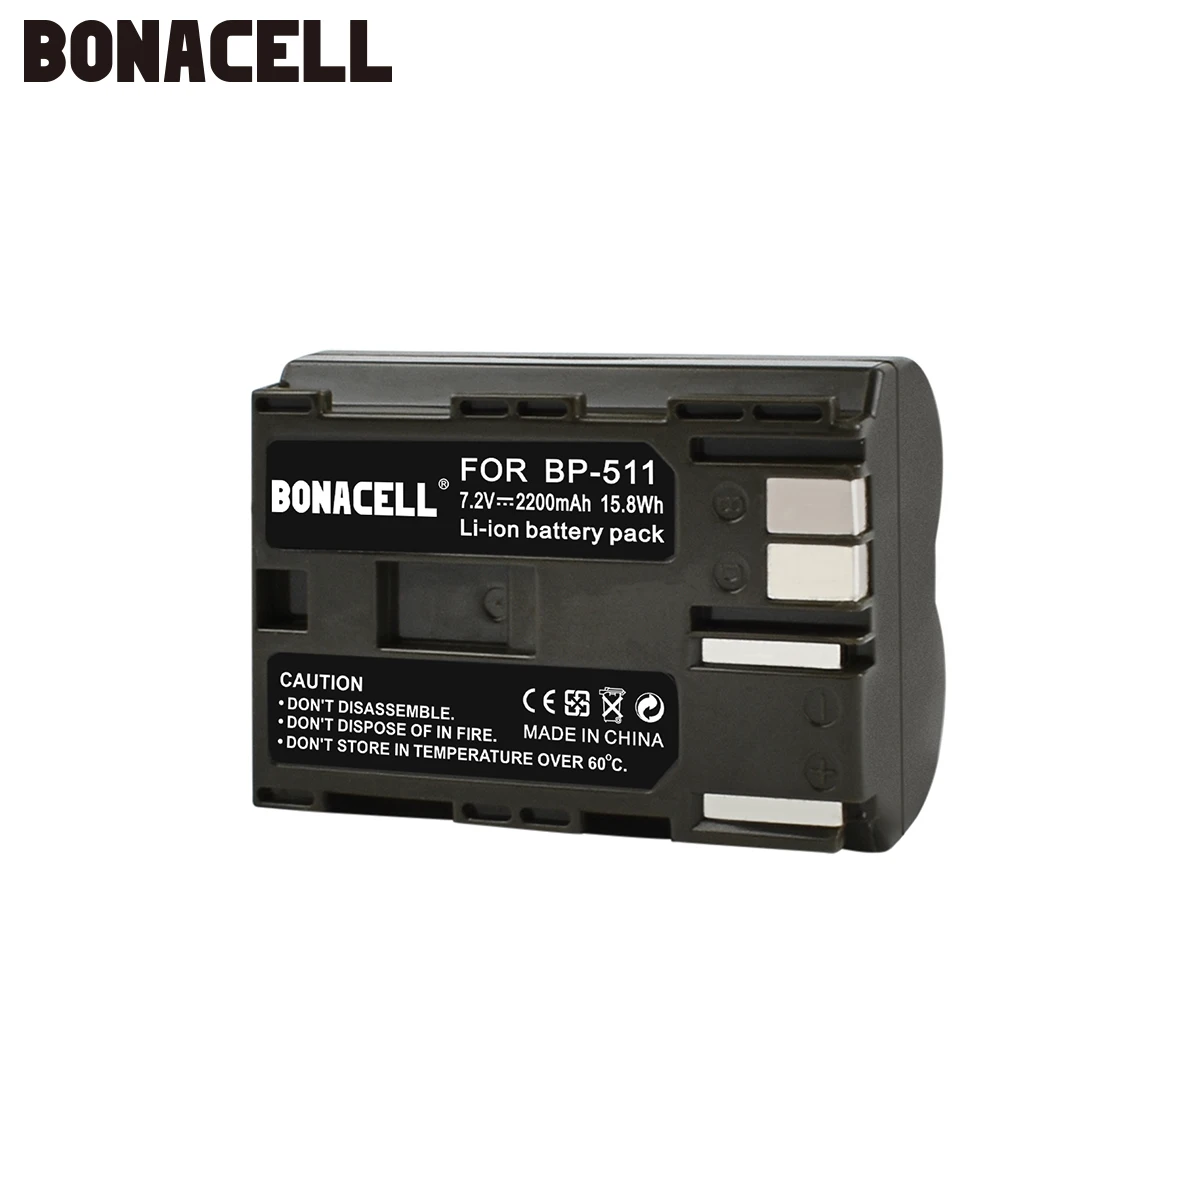 Bonacell 2200mAh BP-511, Baterija BP-511A BP511 BP511A Canon G5 G6, G3, G2, G1 EOS 300D 50D, 40D 30D 20D 5D MV300i Skaitmeninis Fotoaparatas